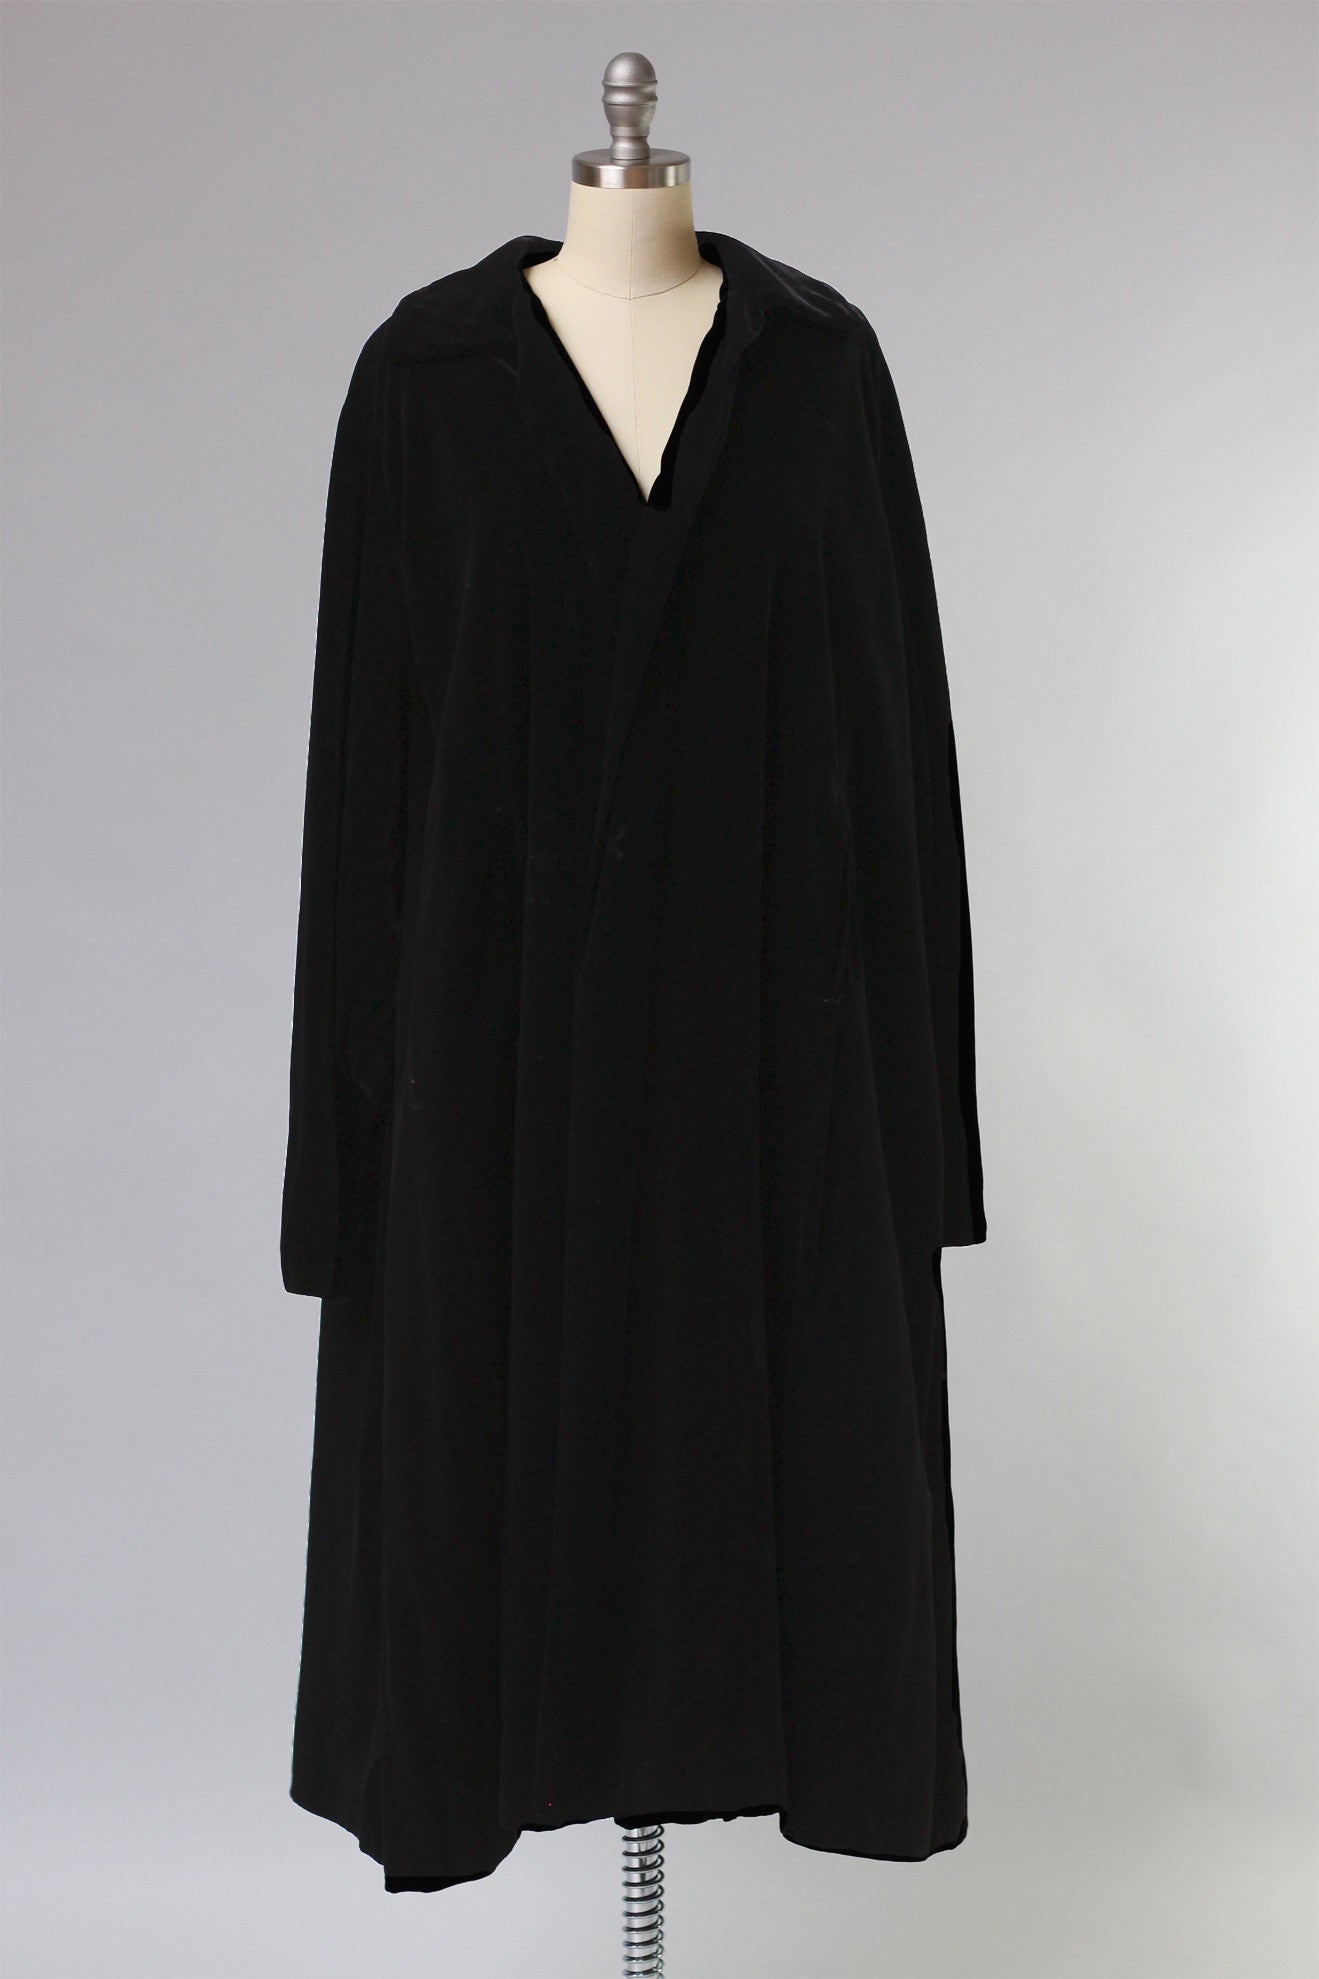 Incredible Dior "New Look" 1950s Velvet Opera Coat